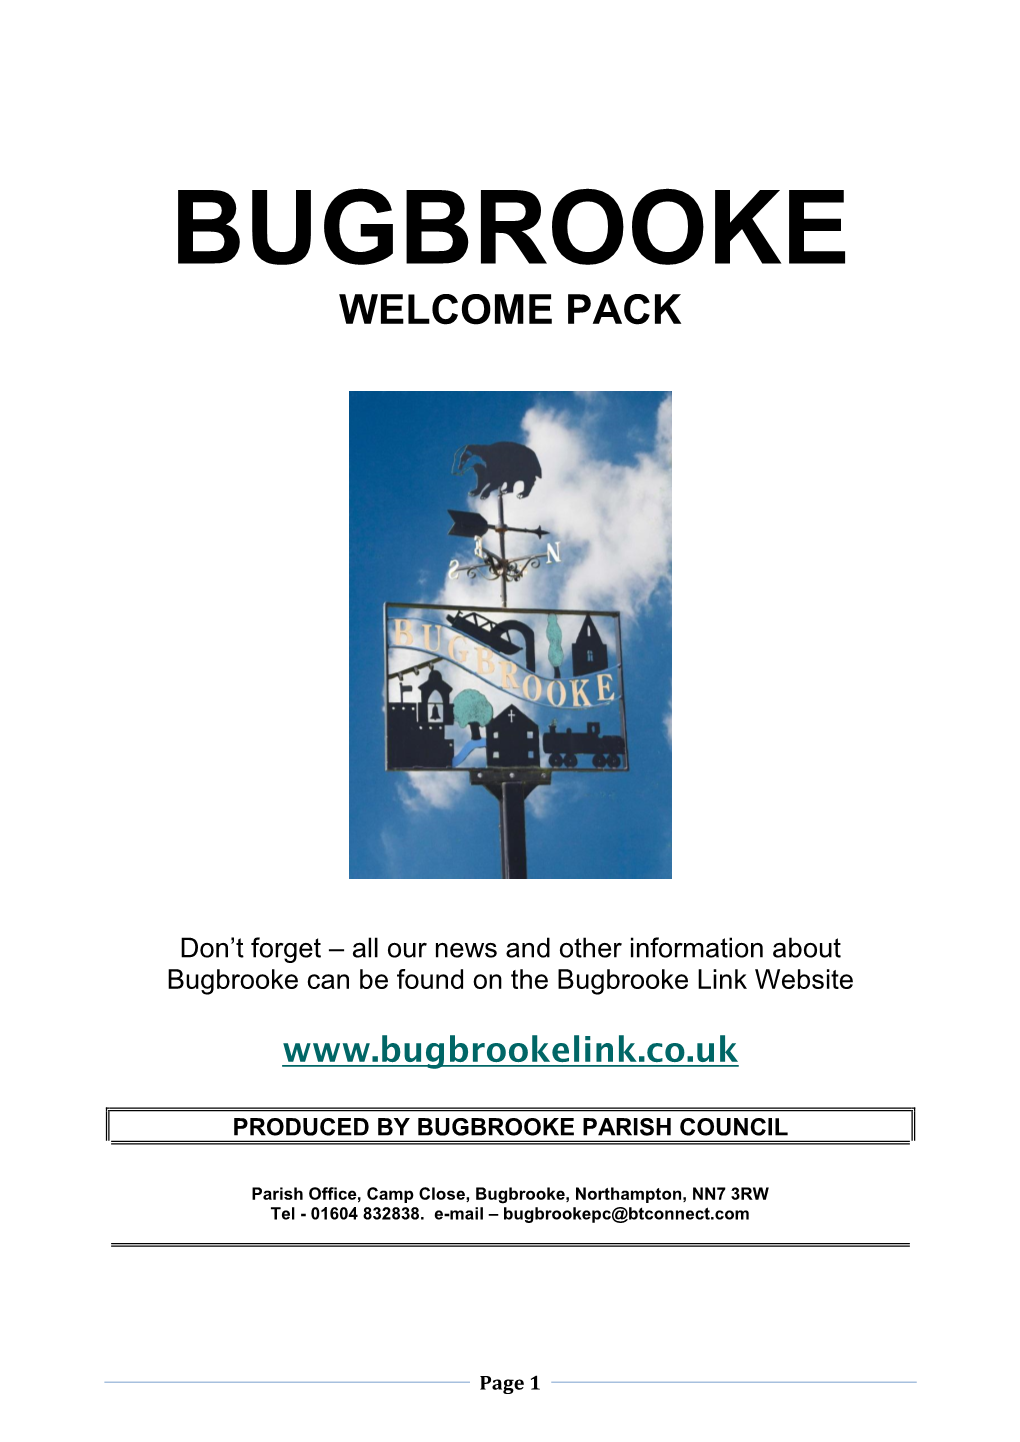 Bugbrooke Link Website